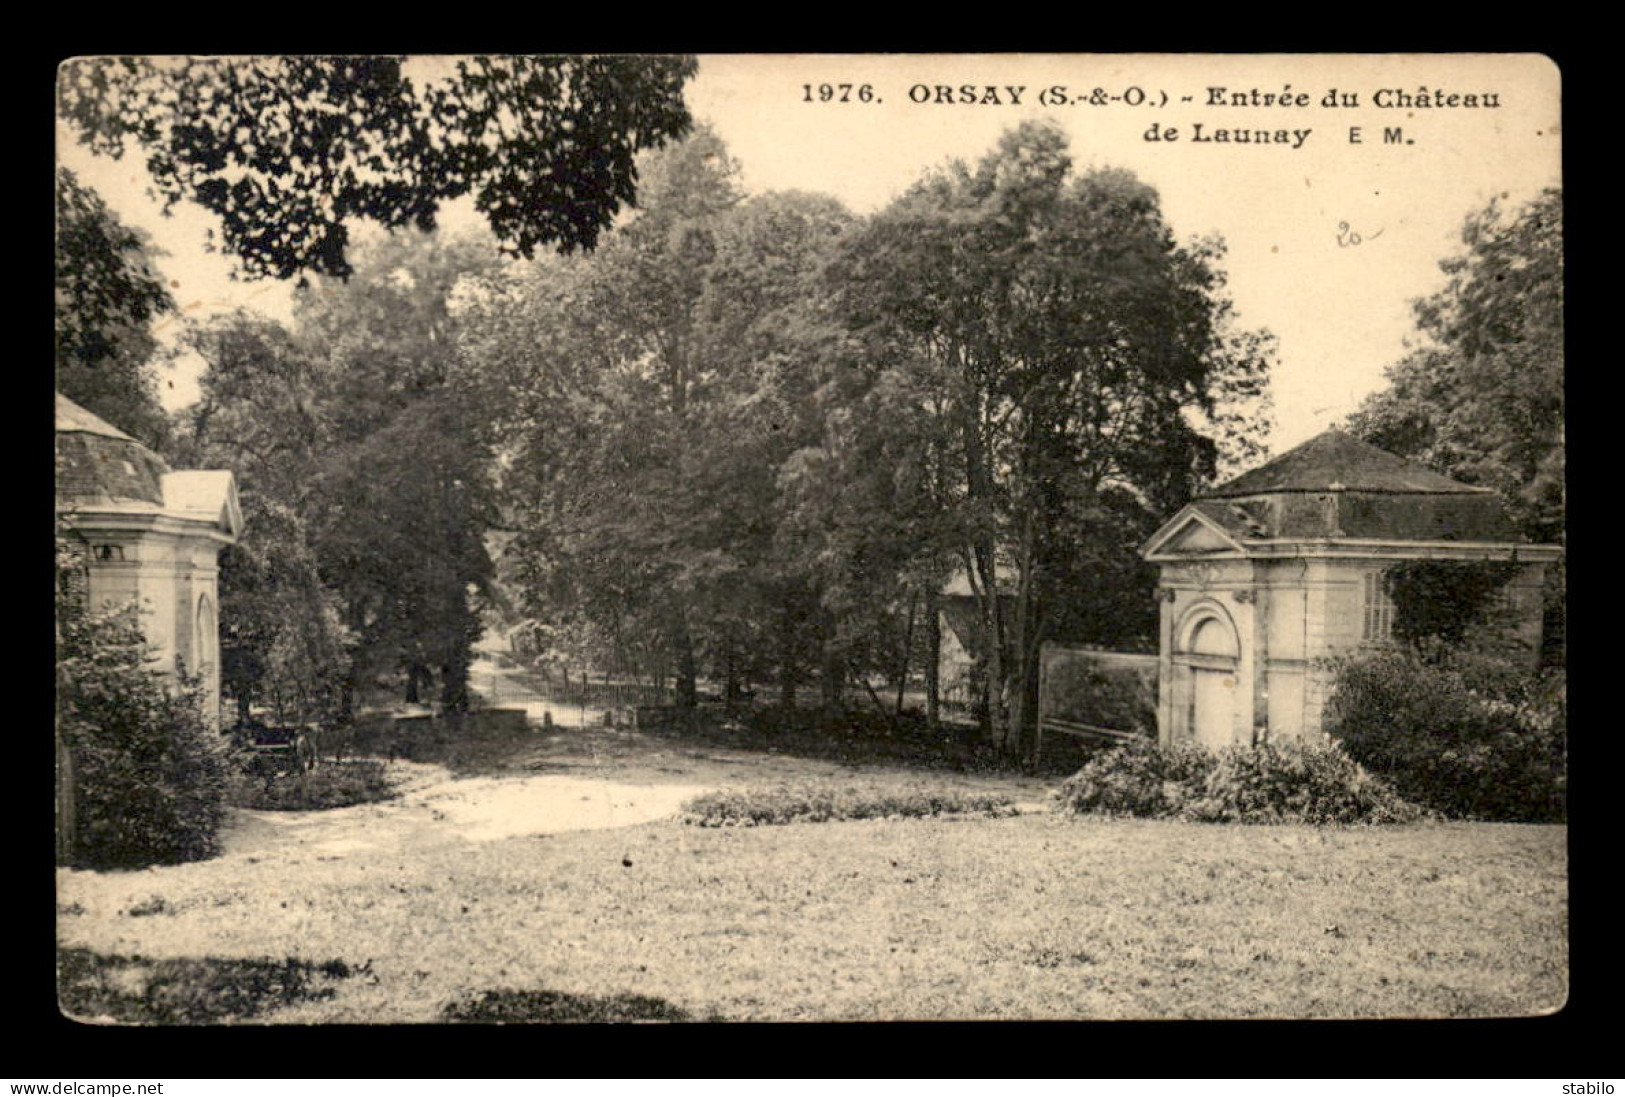 91 - ORSAY - ENTREE DU CHATEAU DE LAUNAY - Orsay